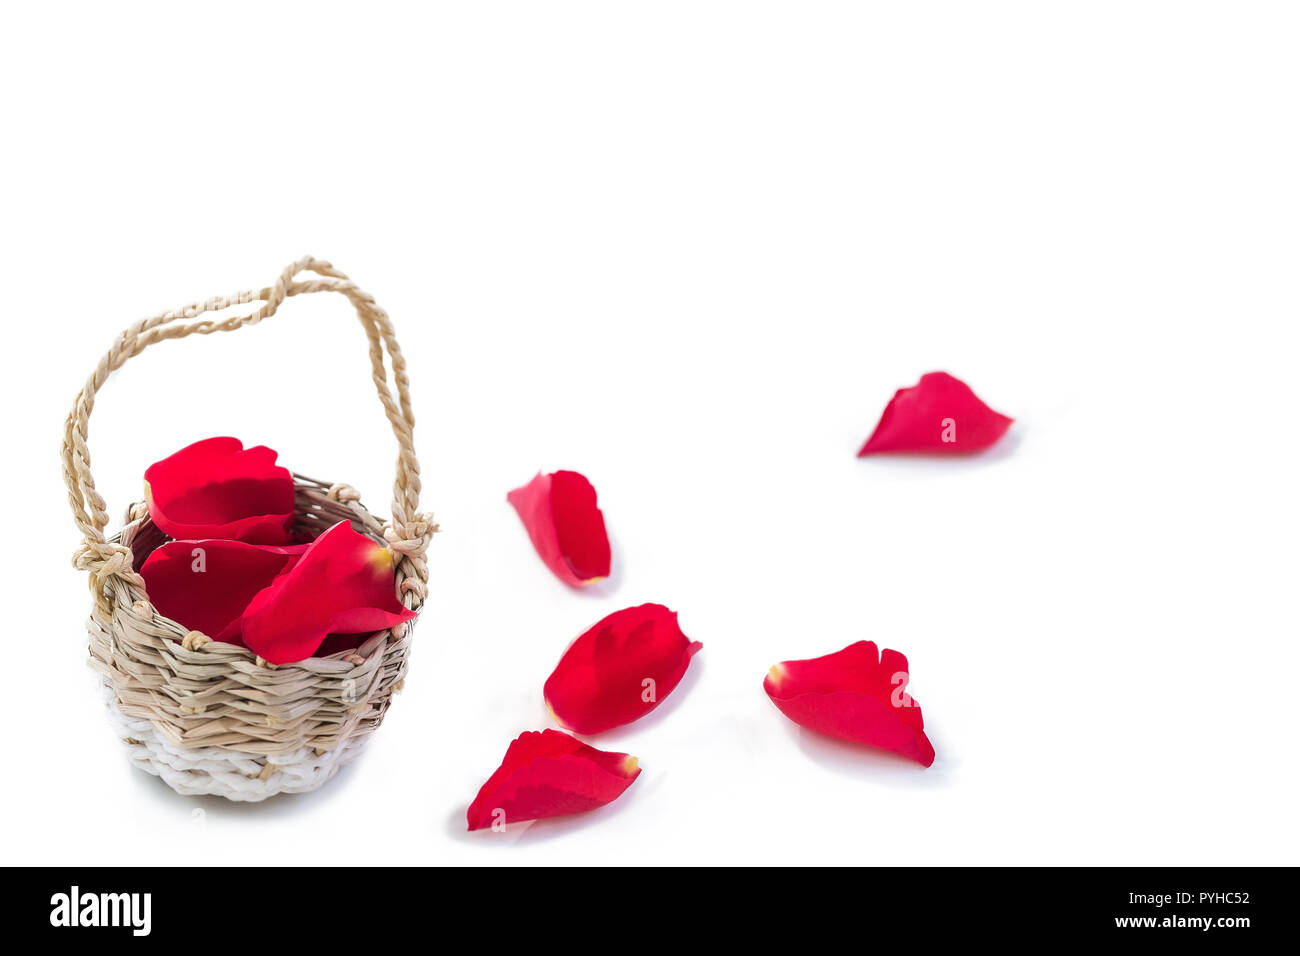 Cesta de mimbre de pétalos rojos Rose, con algunos en el suelo sobre un fondo blanco, el Día de San Valentín amor Romance Bodas concepto de amor, símbolo del lujo de la Ternura, Spa, Foto de stock